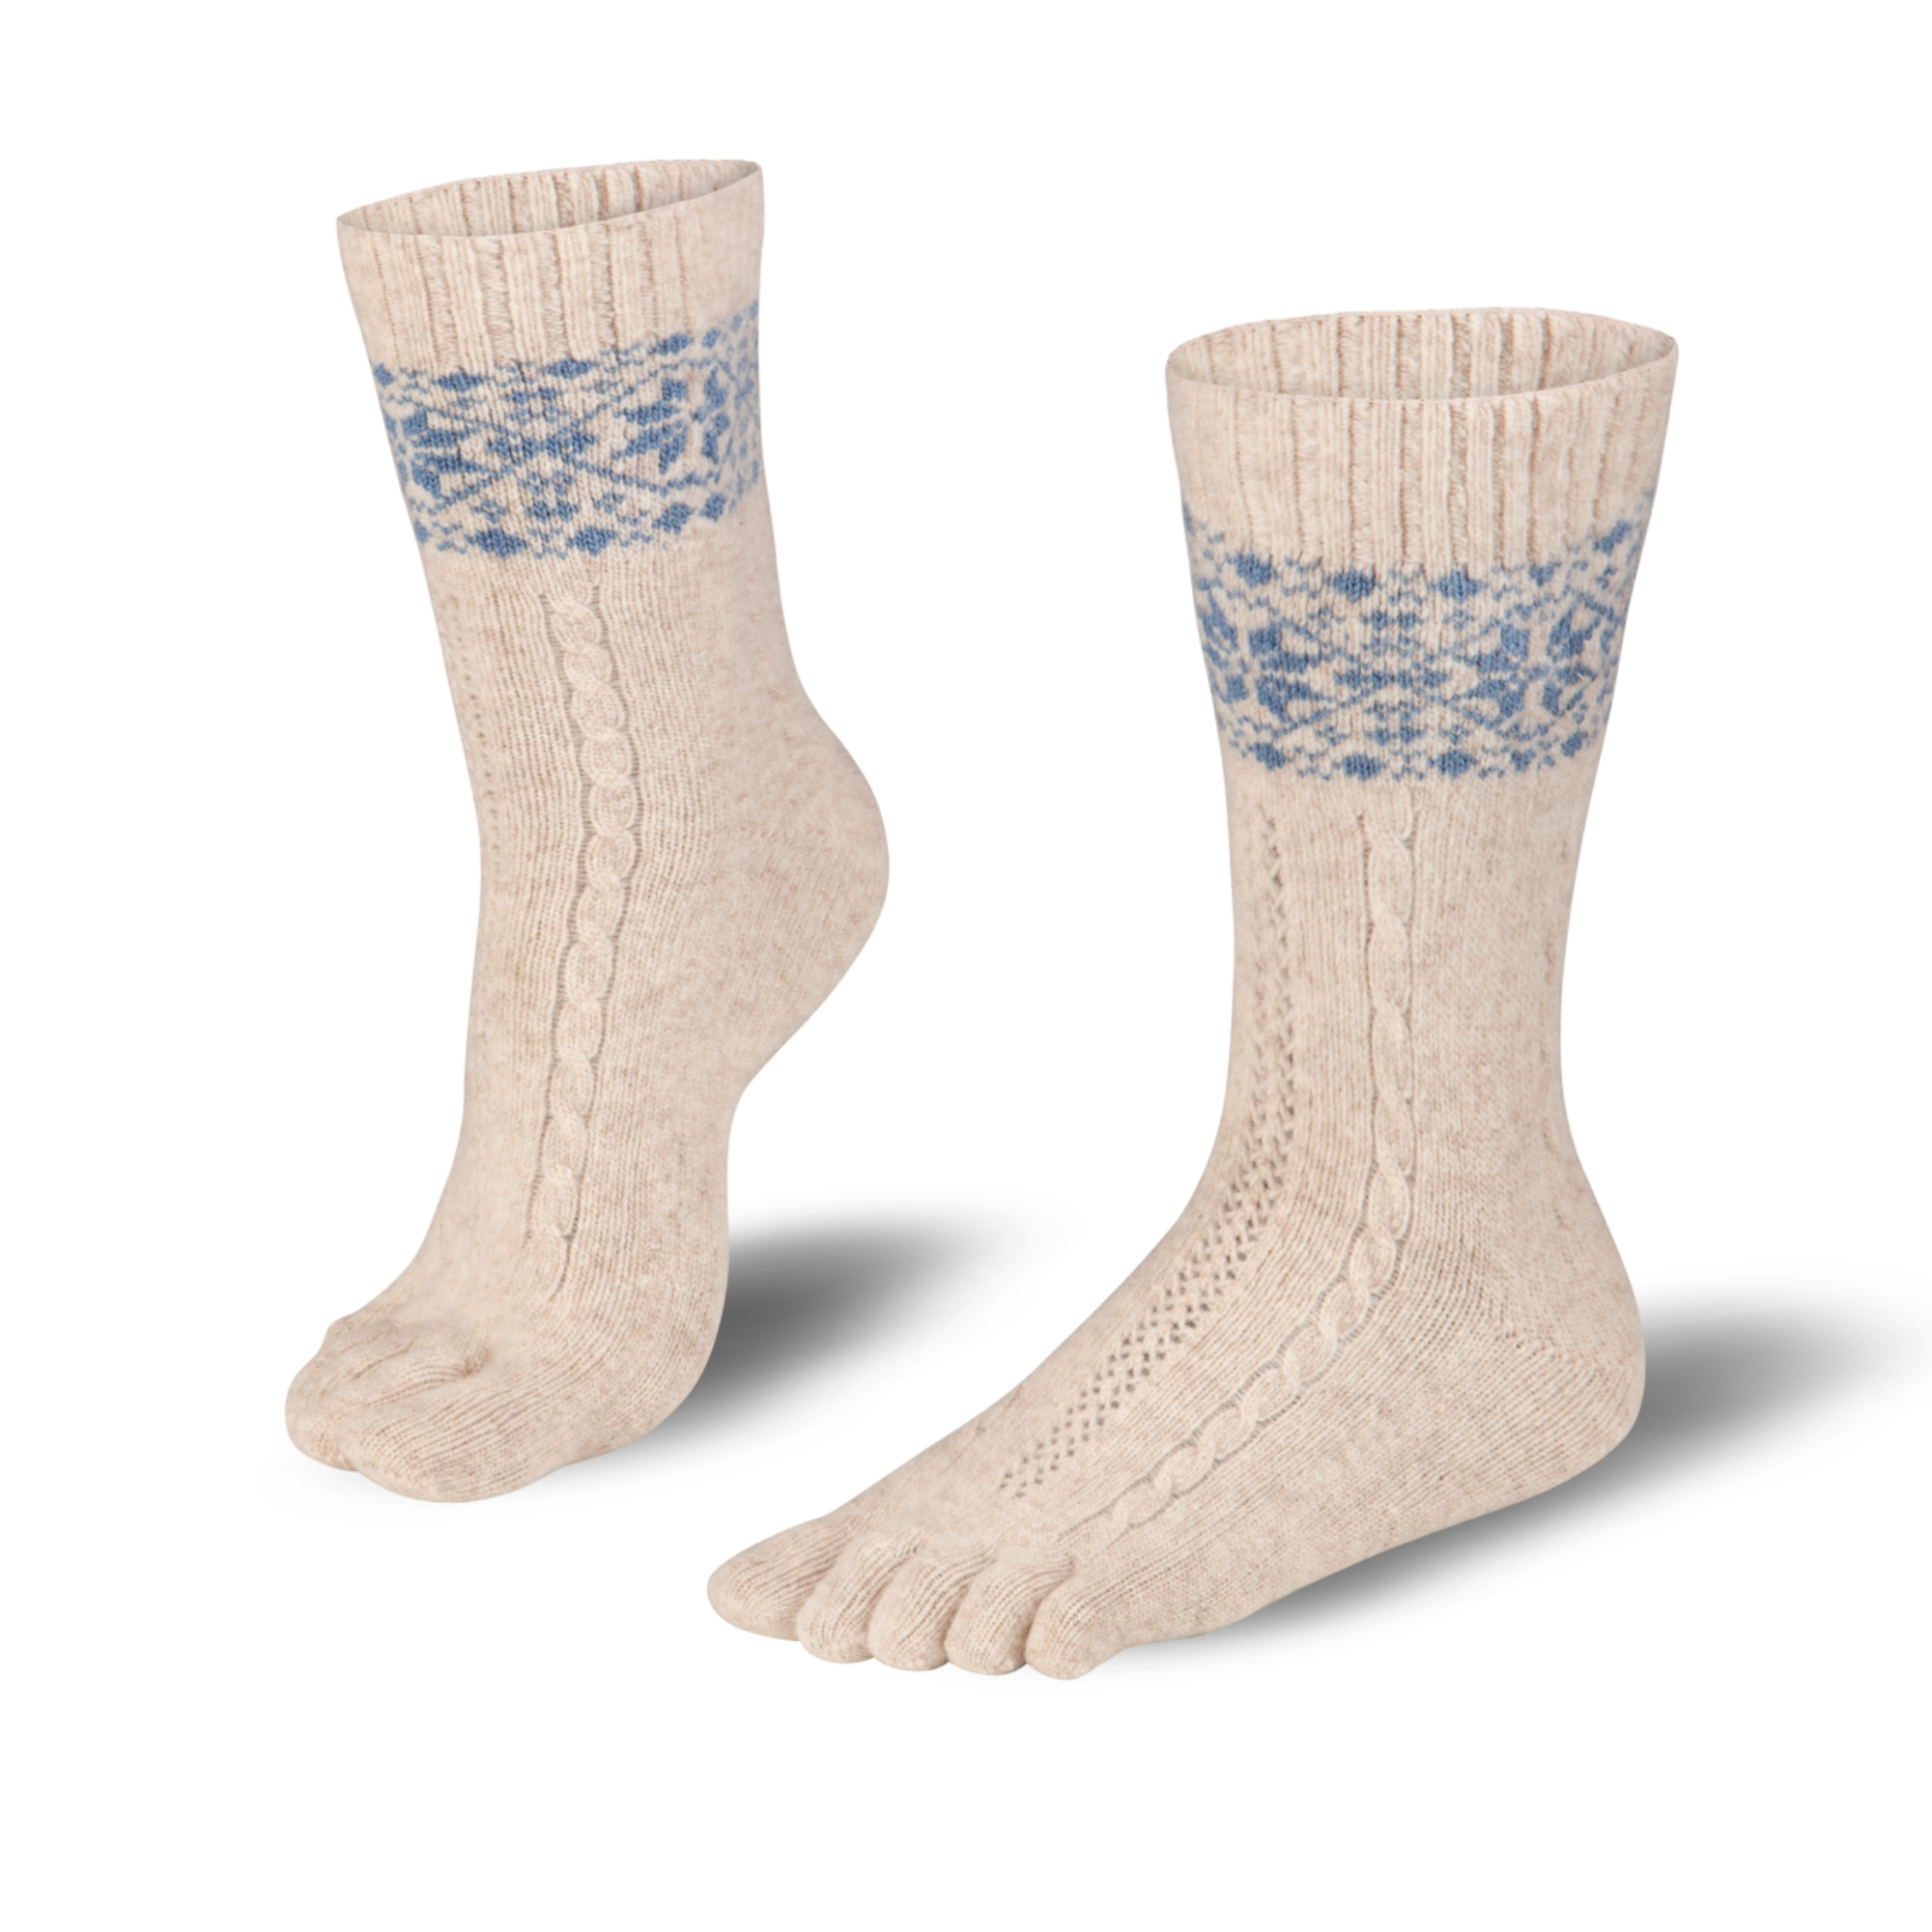 KNITIDO socks Merino Cashmire Snowflakes beige/blue